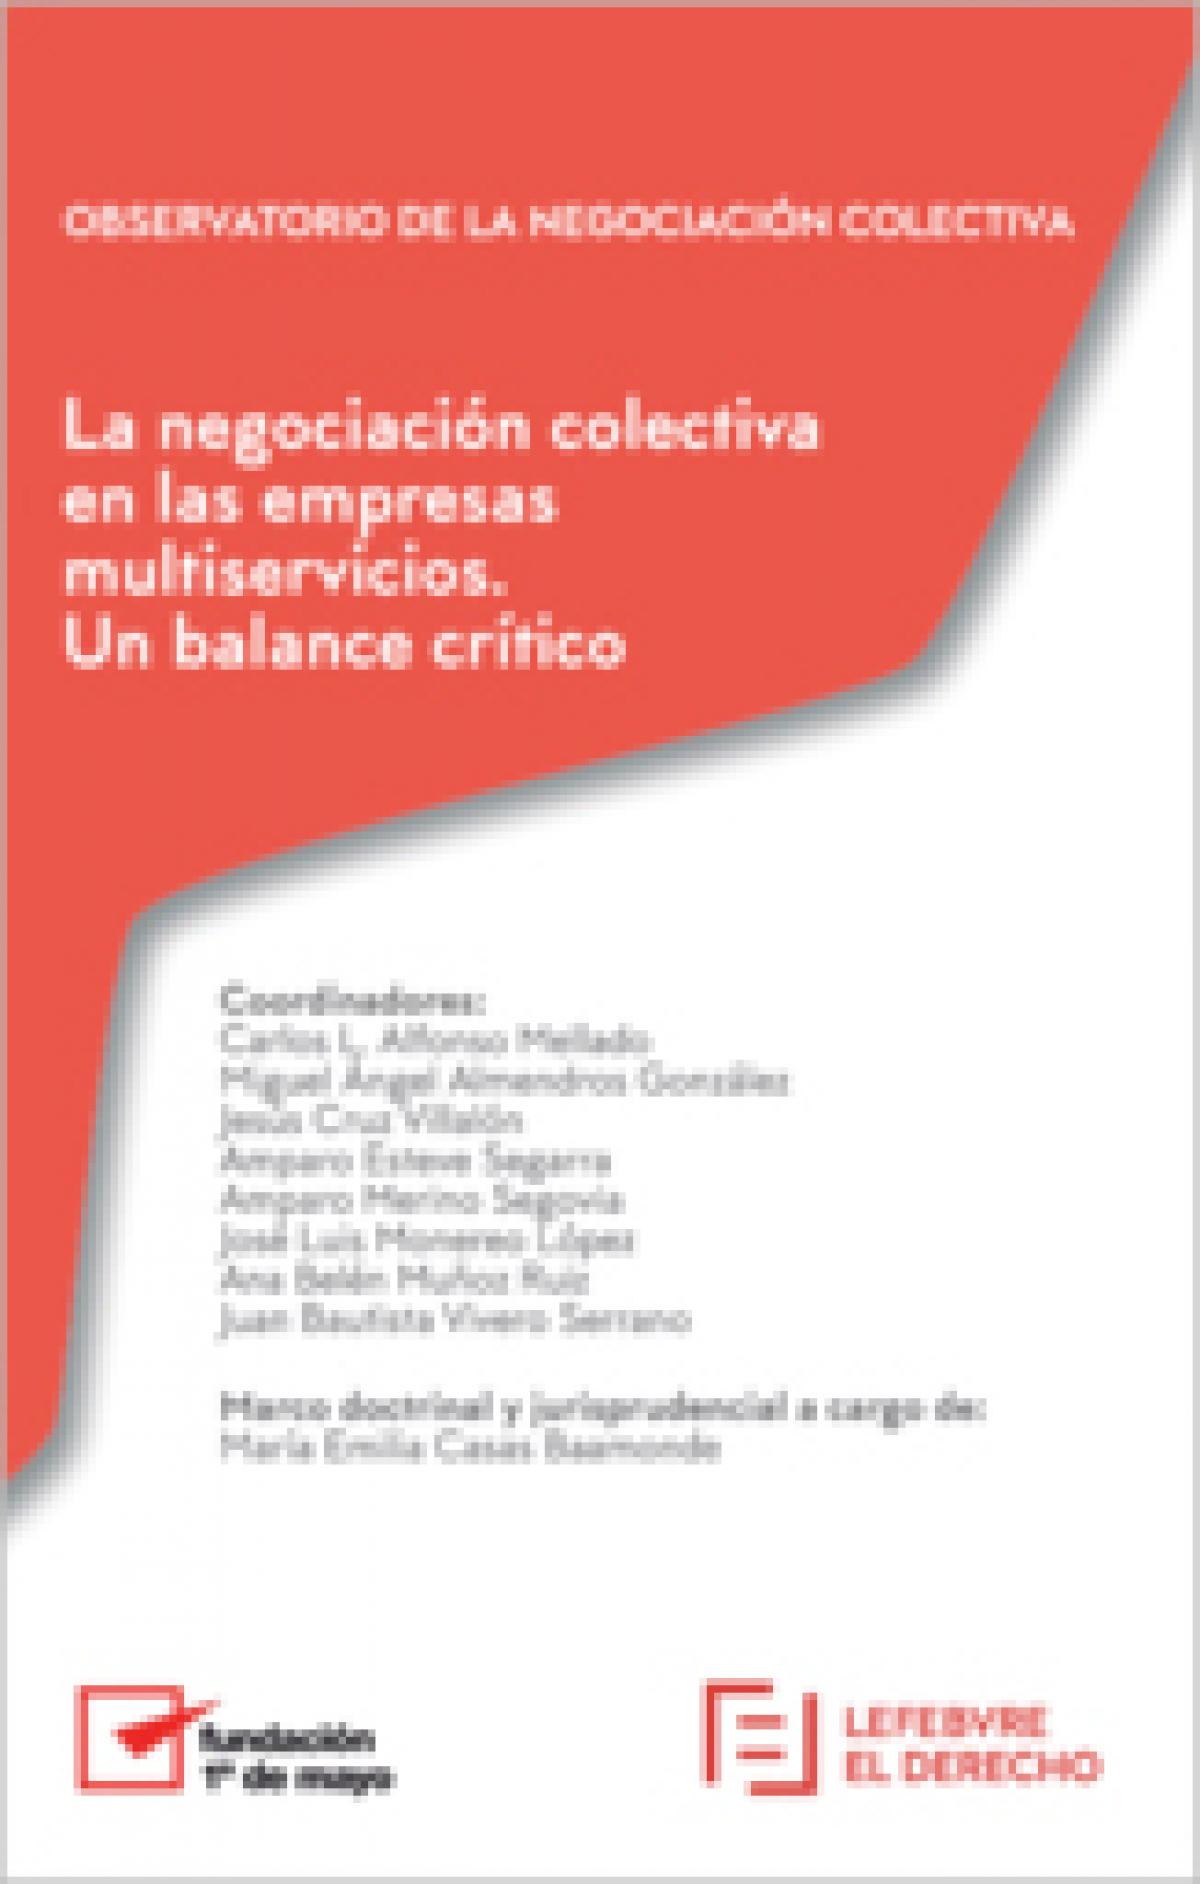 La negociación colectiva en las empresas multiservicios